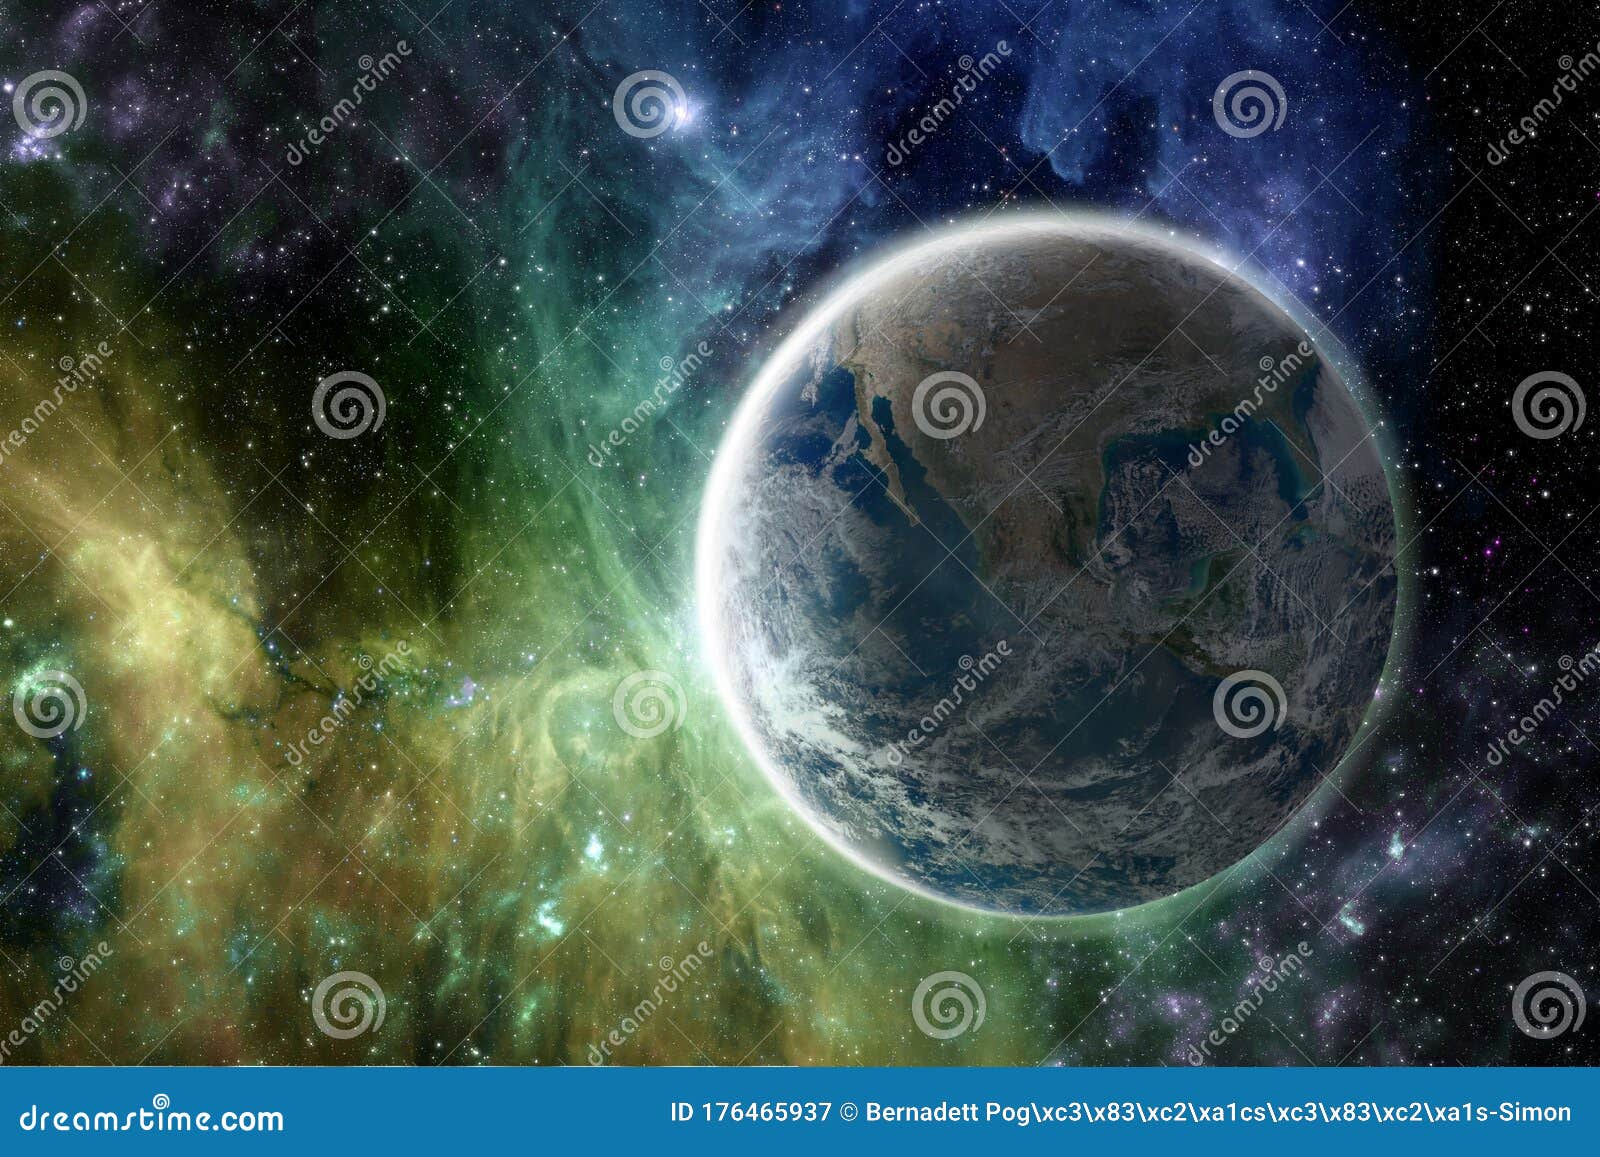 色彩缤纷的银河奇幻壁纸中的地球美国宇航局提供的这幅图像的元素库存例证 插画包括有美国宇航局提供的这幅图像的元素 色彩缤纷的银河奇幻壁纸中的地球